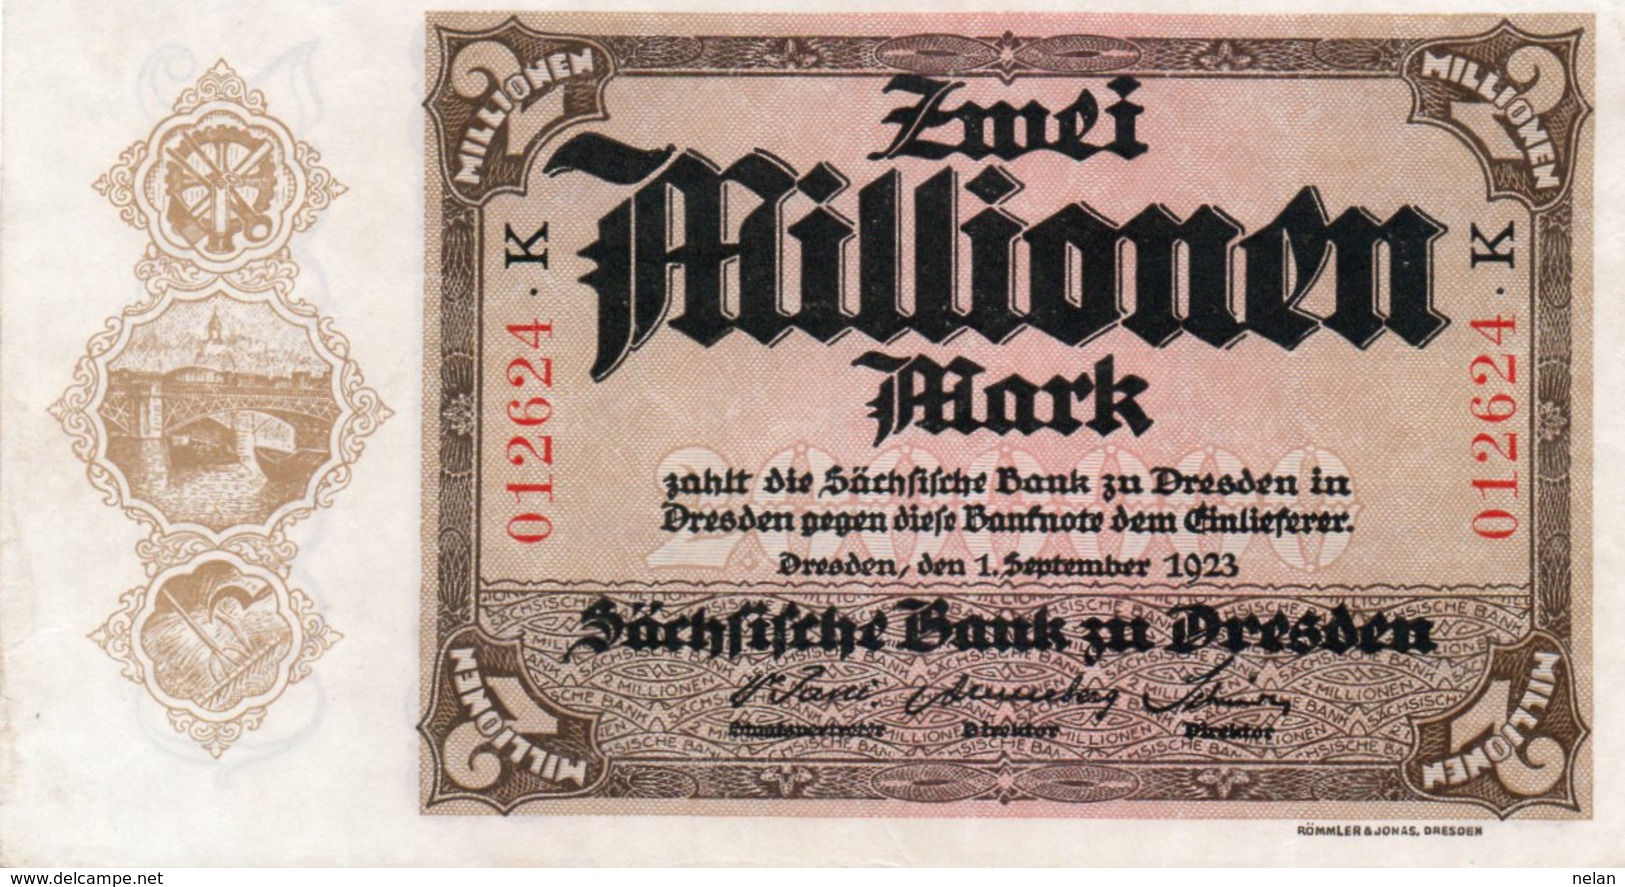 GERMANIA 2000000 MARK 1923-Sachsische Bank-Bank Of Saxony DRESDEN-P-S963  AUNC - Ohne Zuordnung